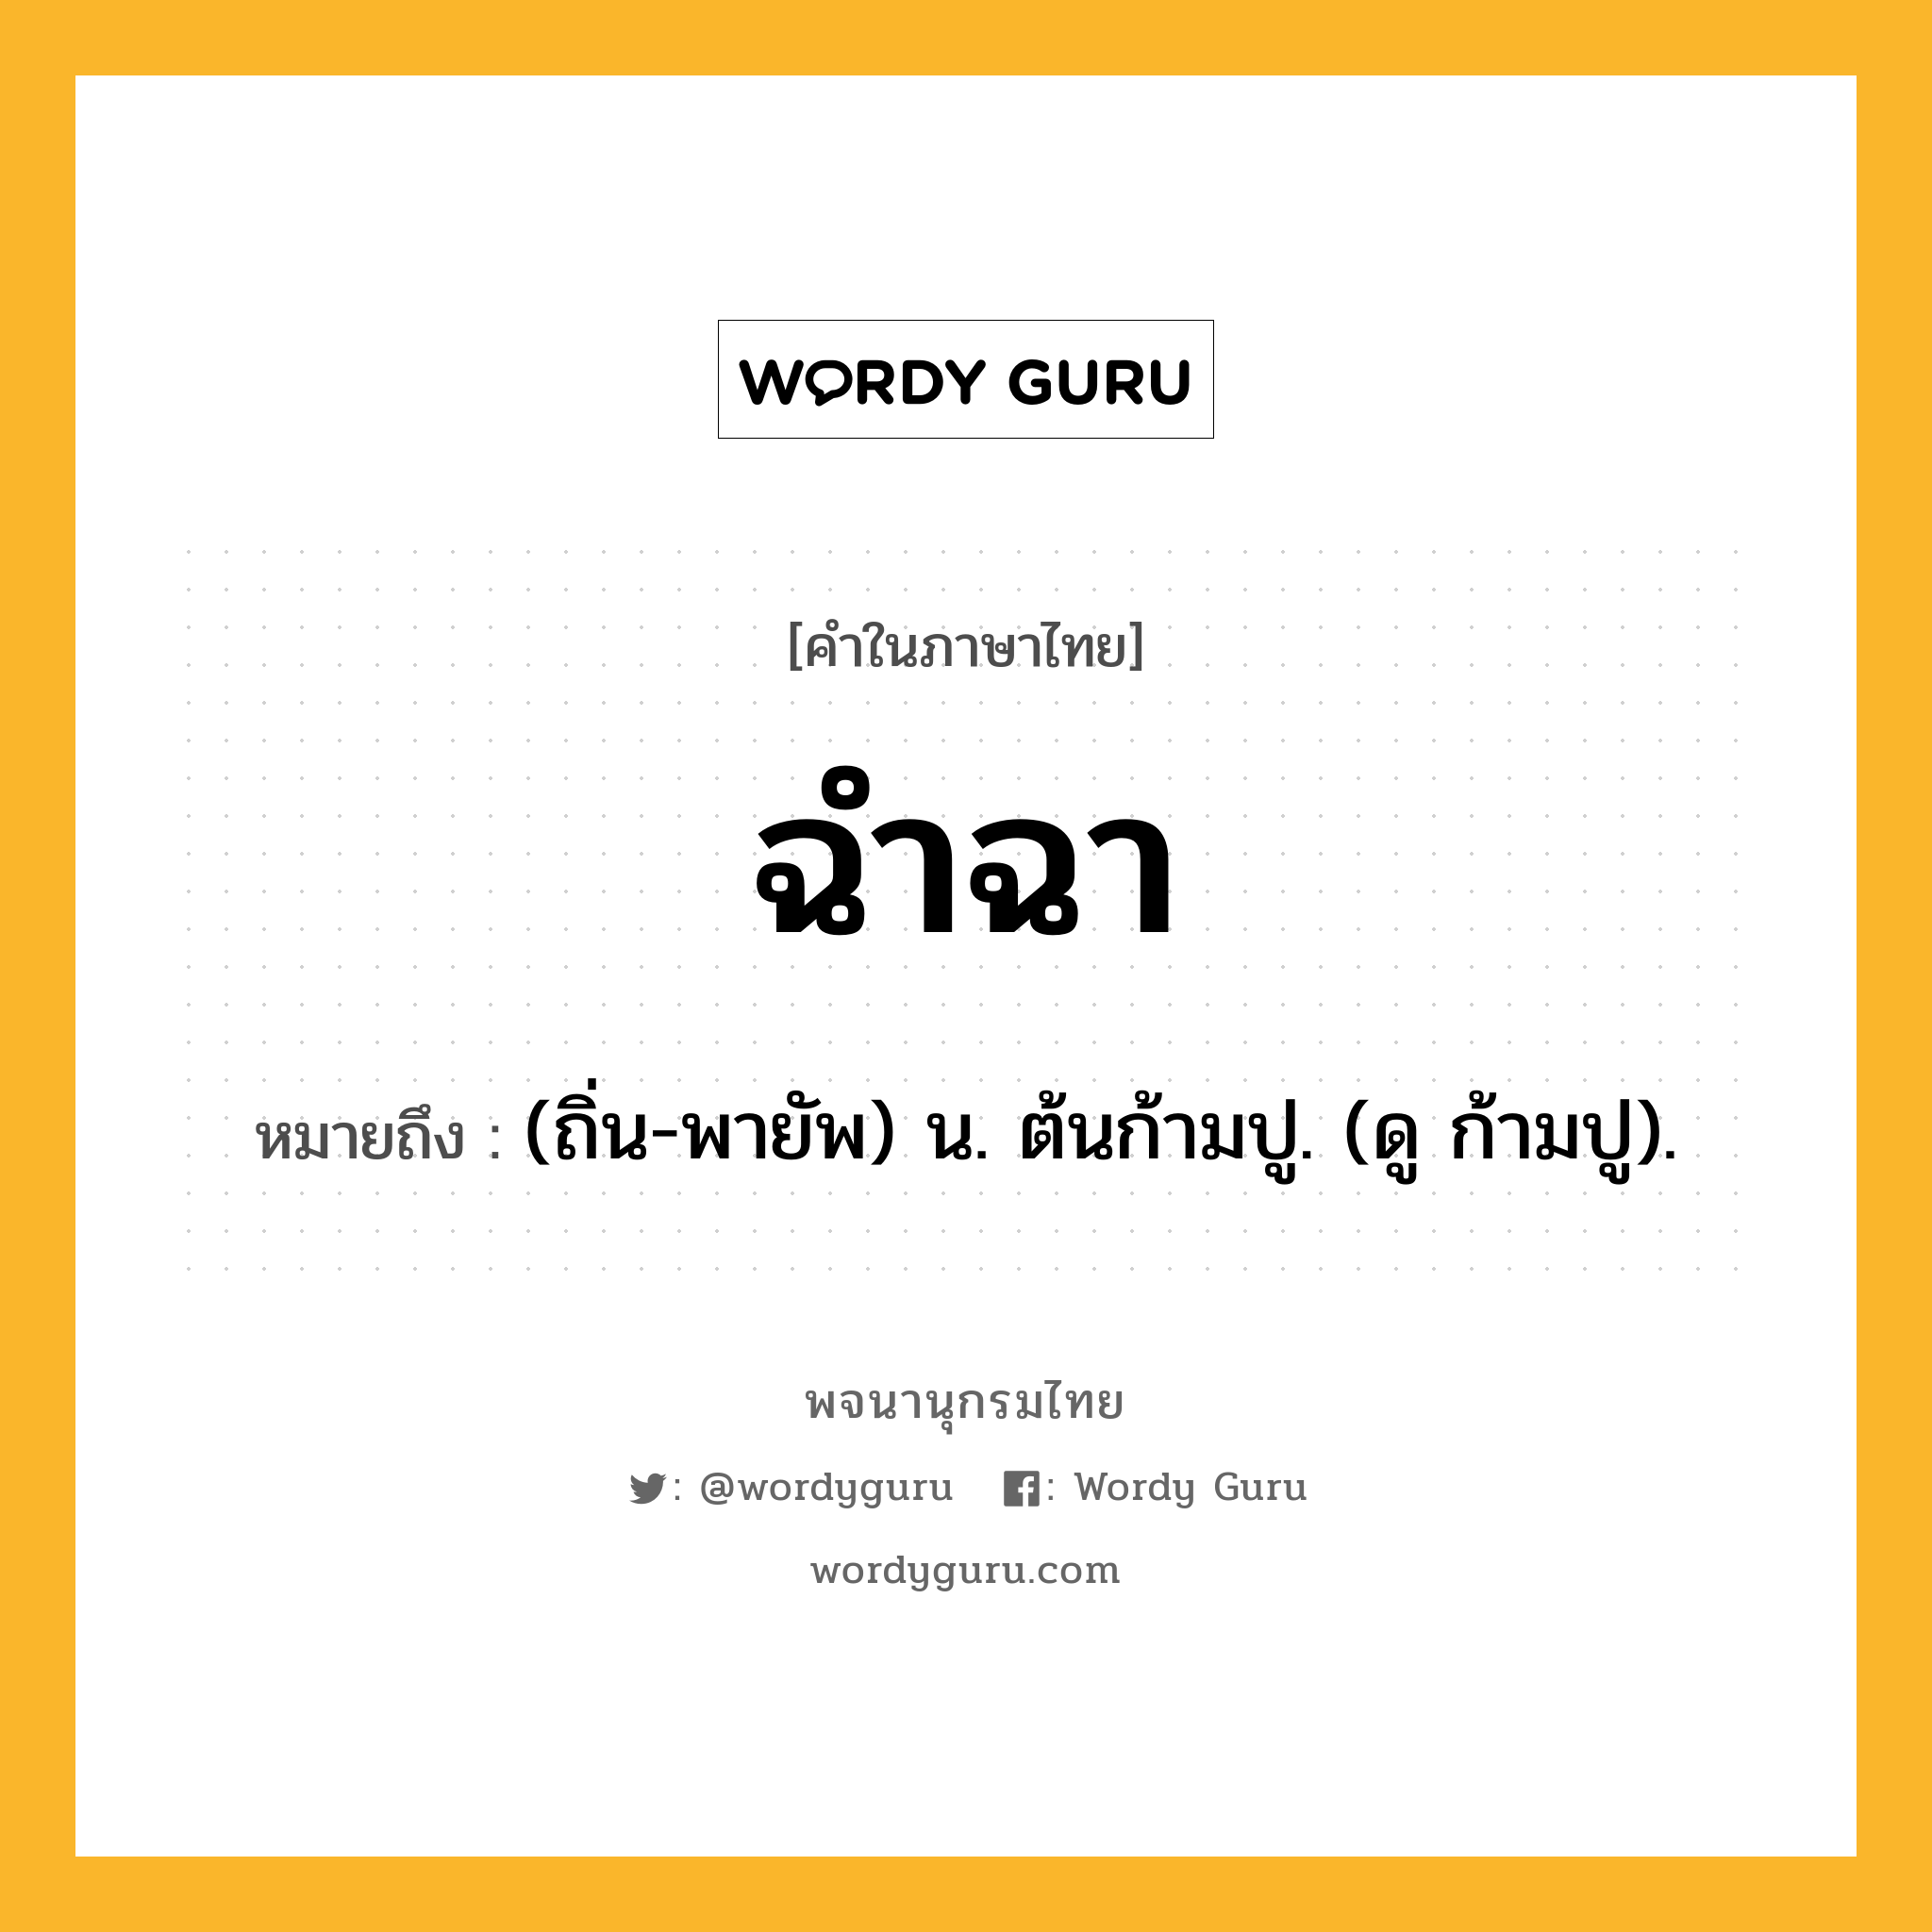 ฉำฉา ความหมาย หมายถึงอะไร?, คำในภาษาไทย ฉำฉา หมายถึง (ถิ่น-พายัพ) น. ต้นก้ามปู. (ดู ก้ามปู).